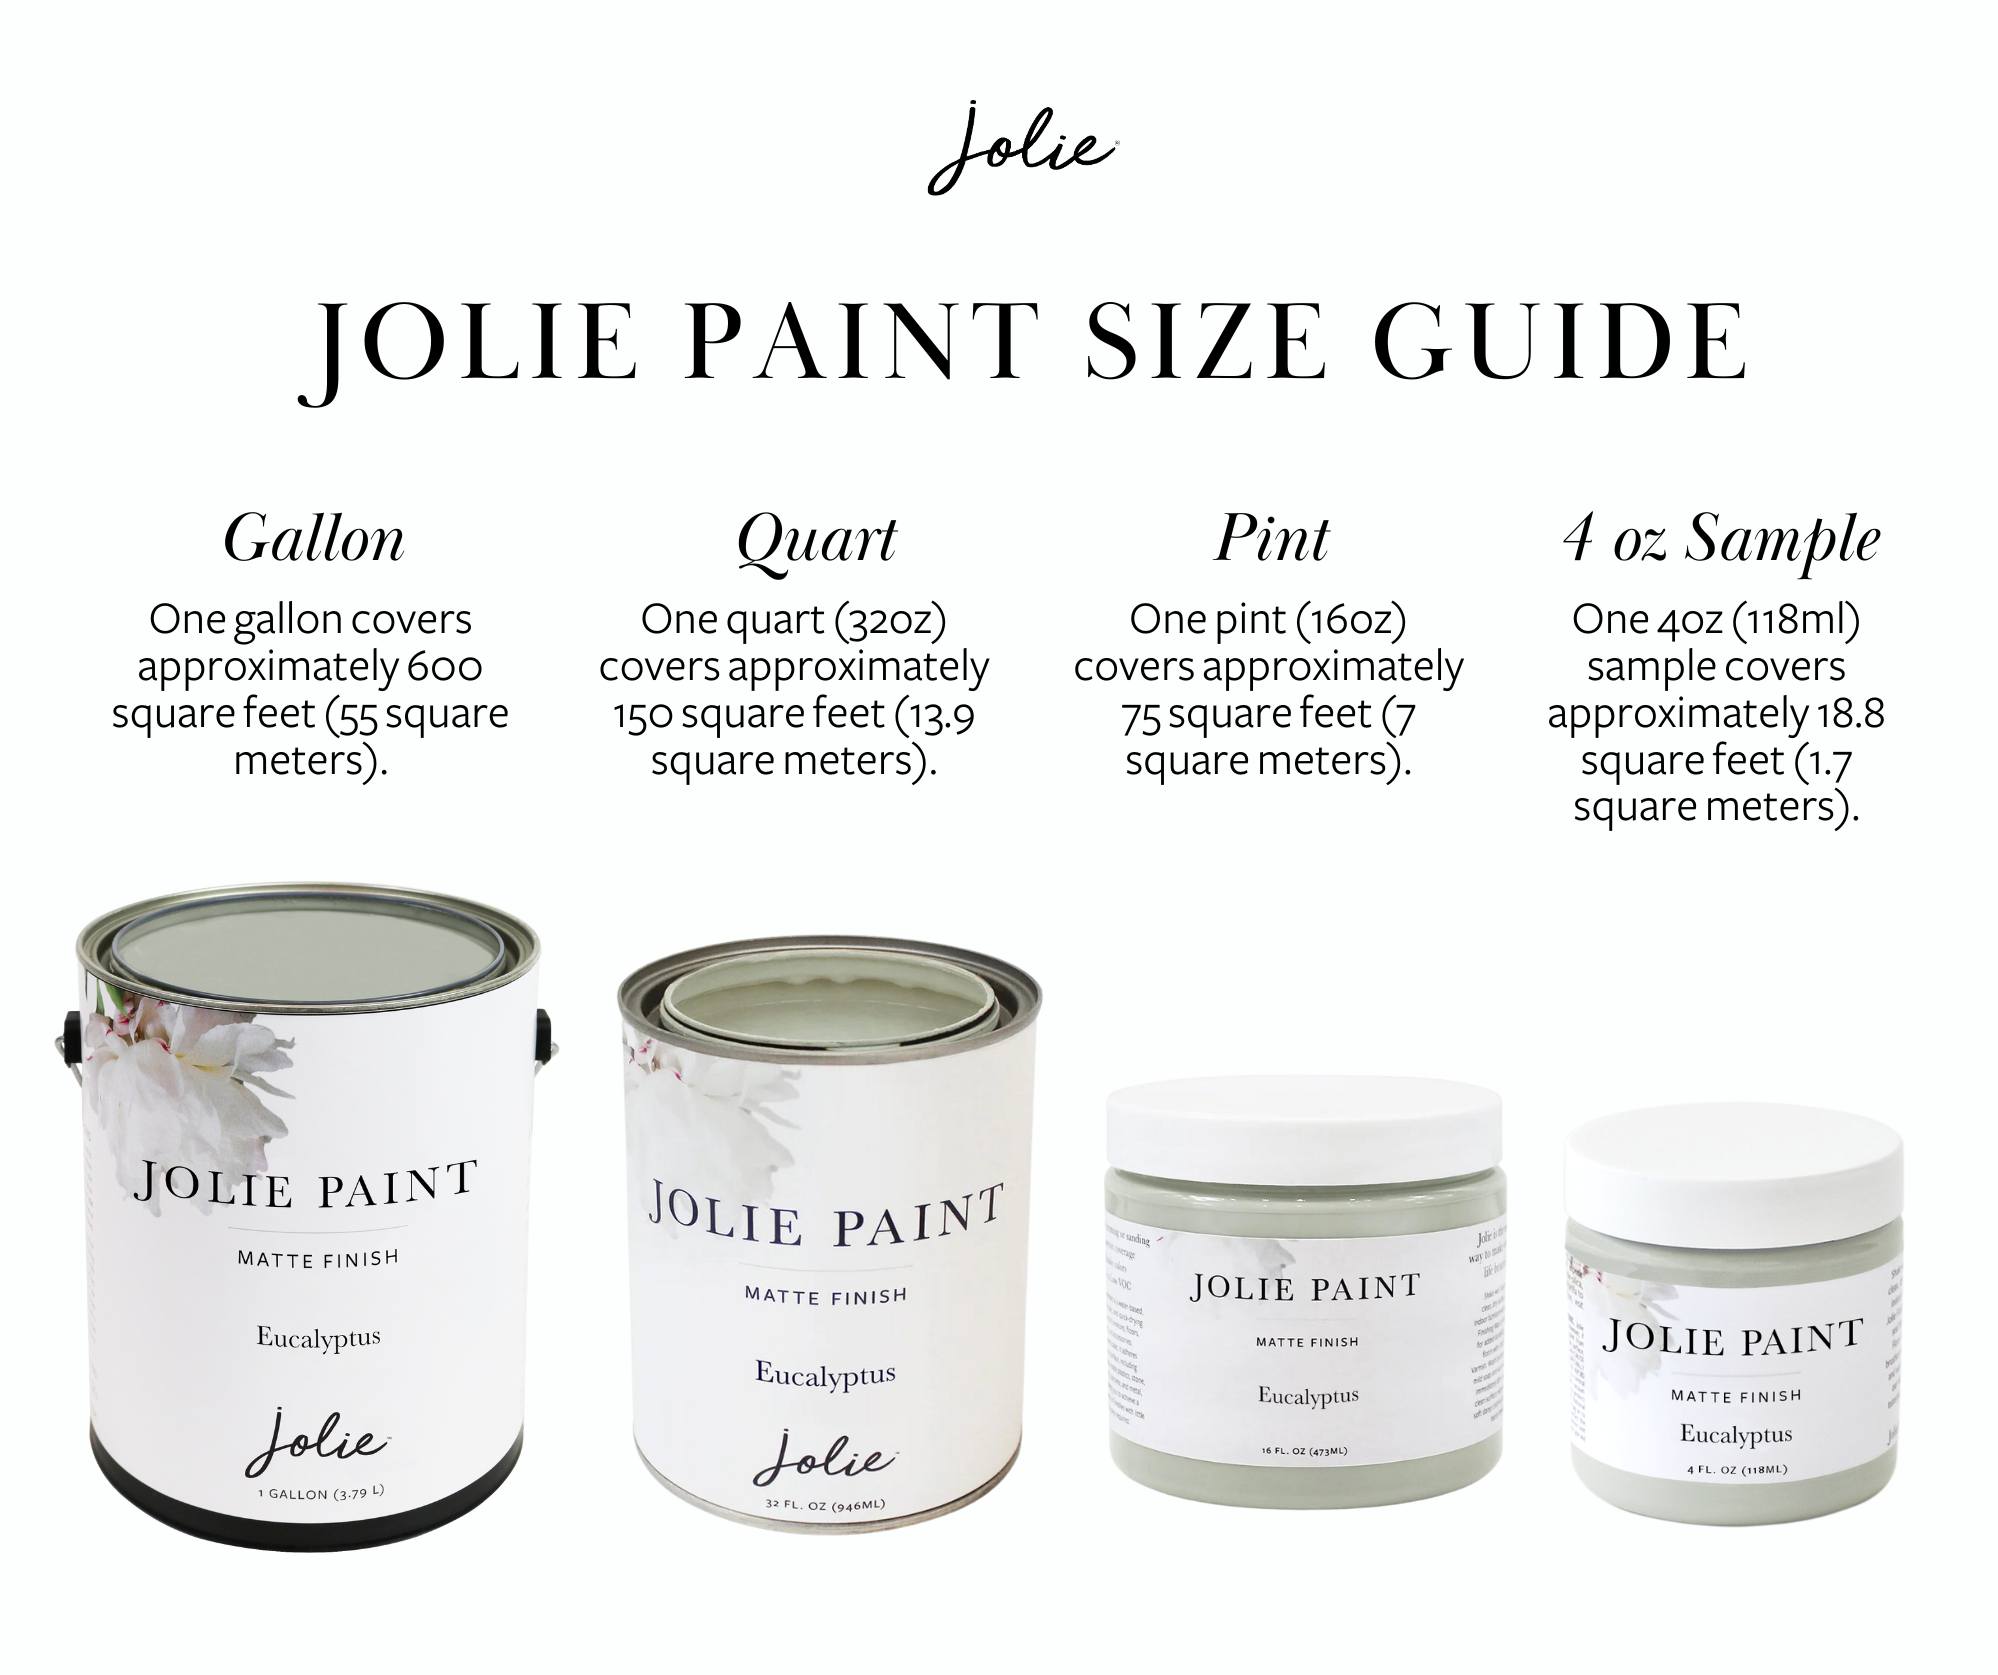 Jolie Paint Color Card | Chalk Finish Paint Swatches